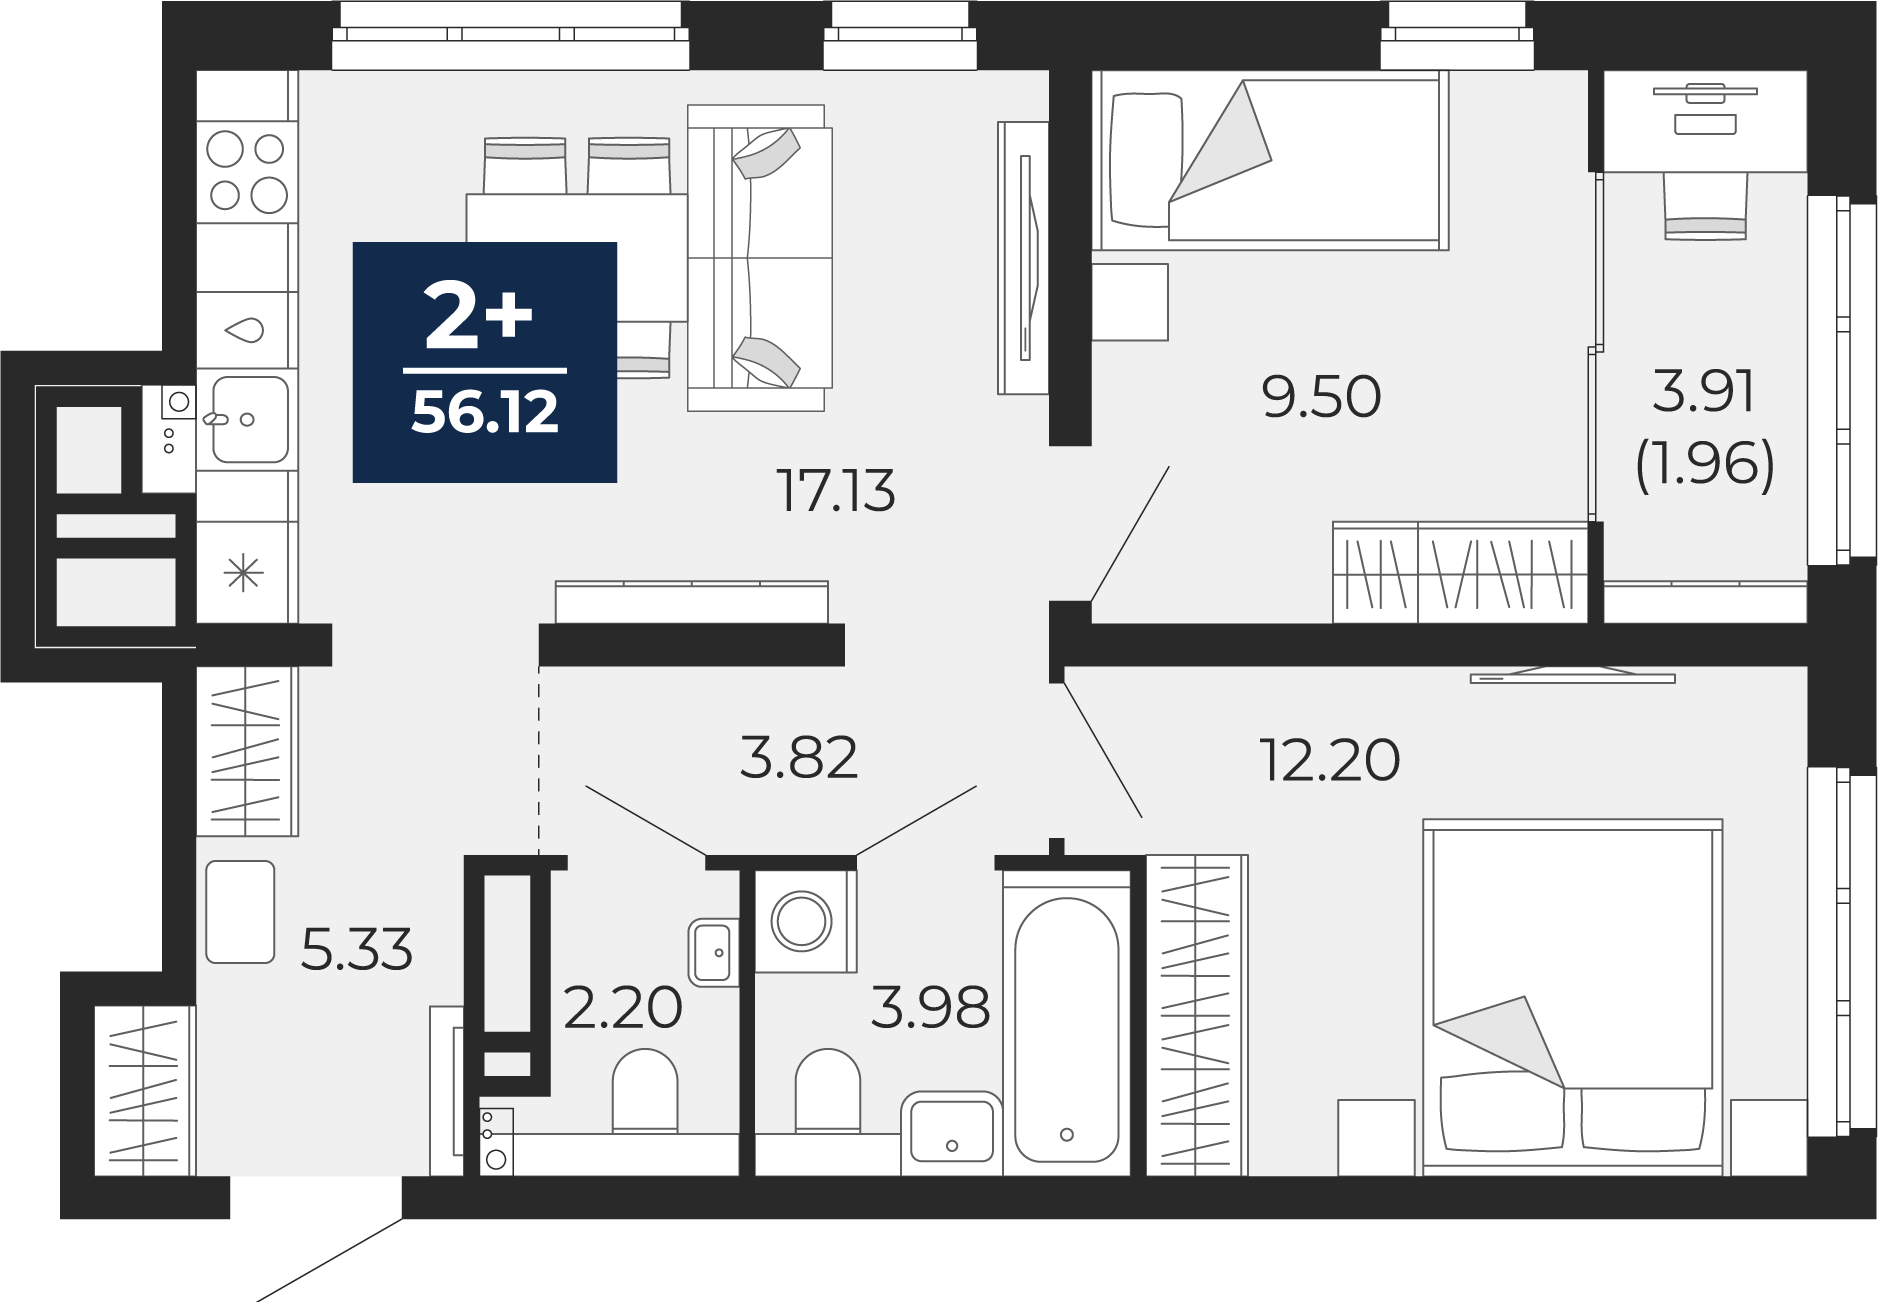 Квартира № 182, 2-комнатная, 56.12 кв. м, 18 этаж